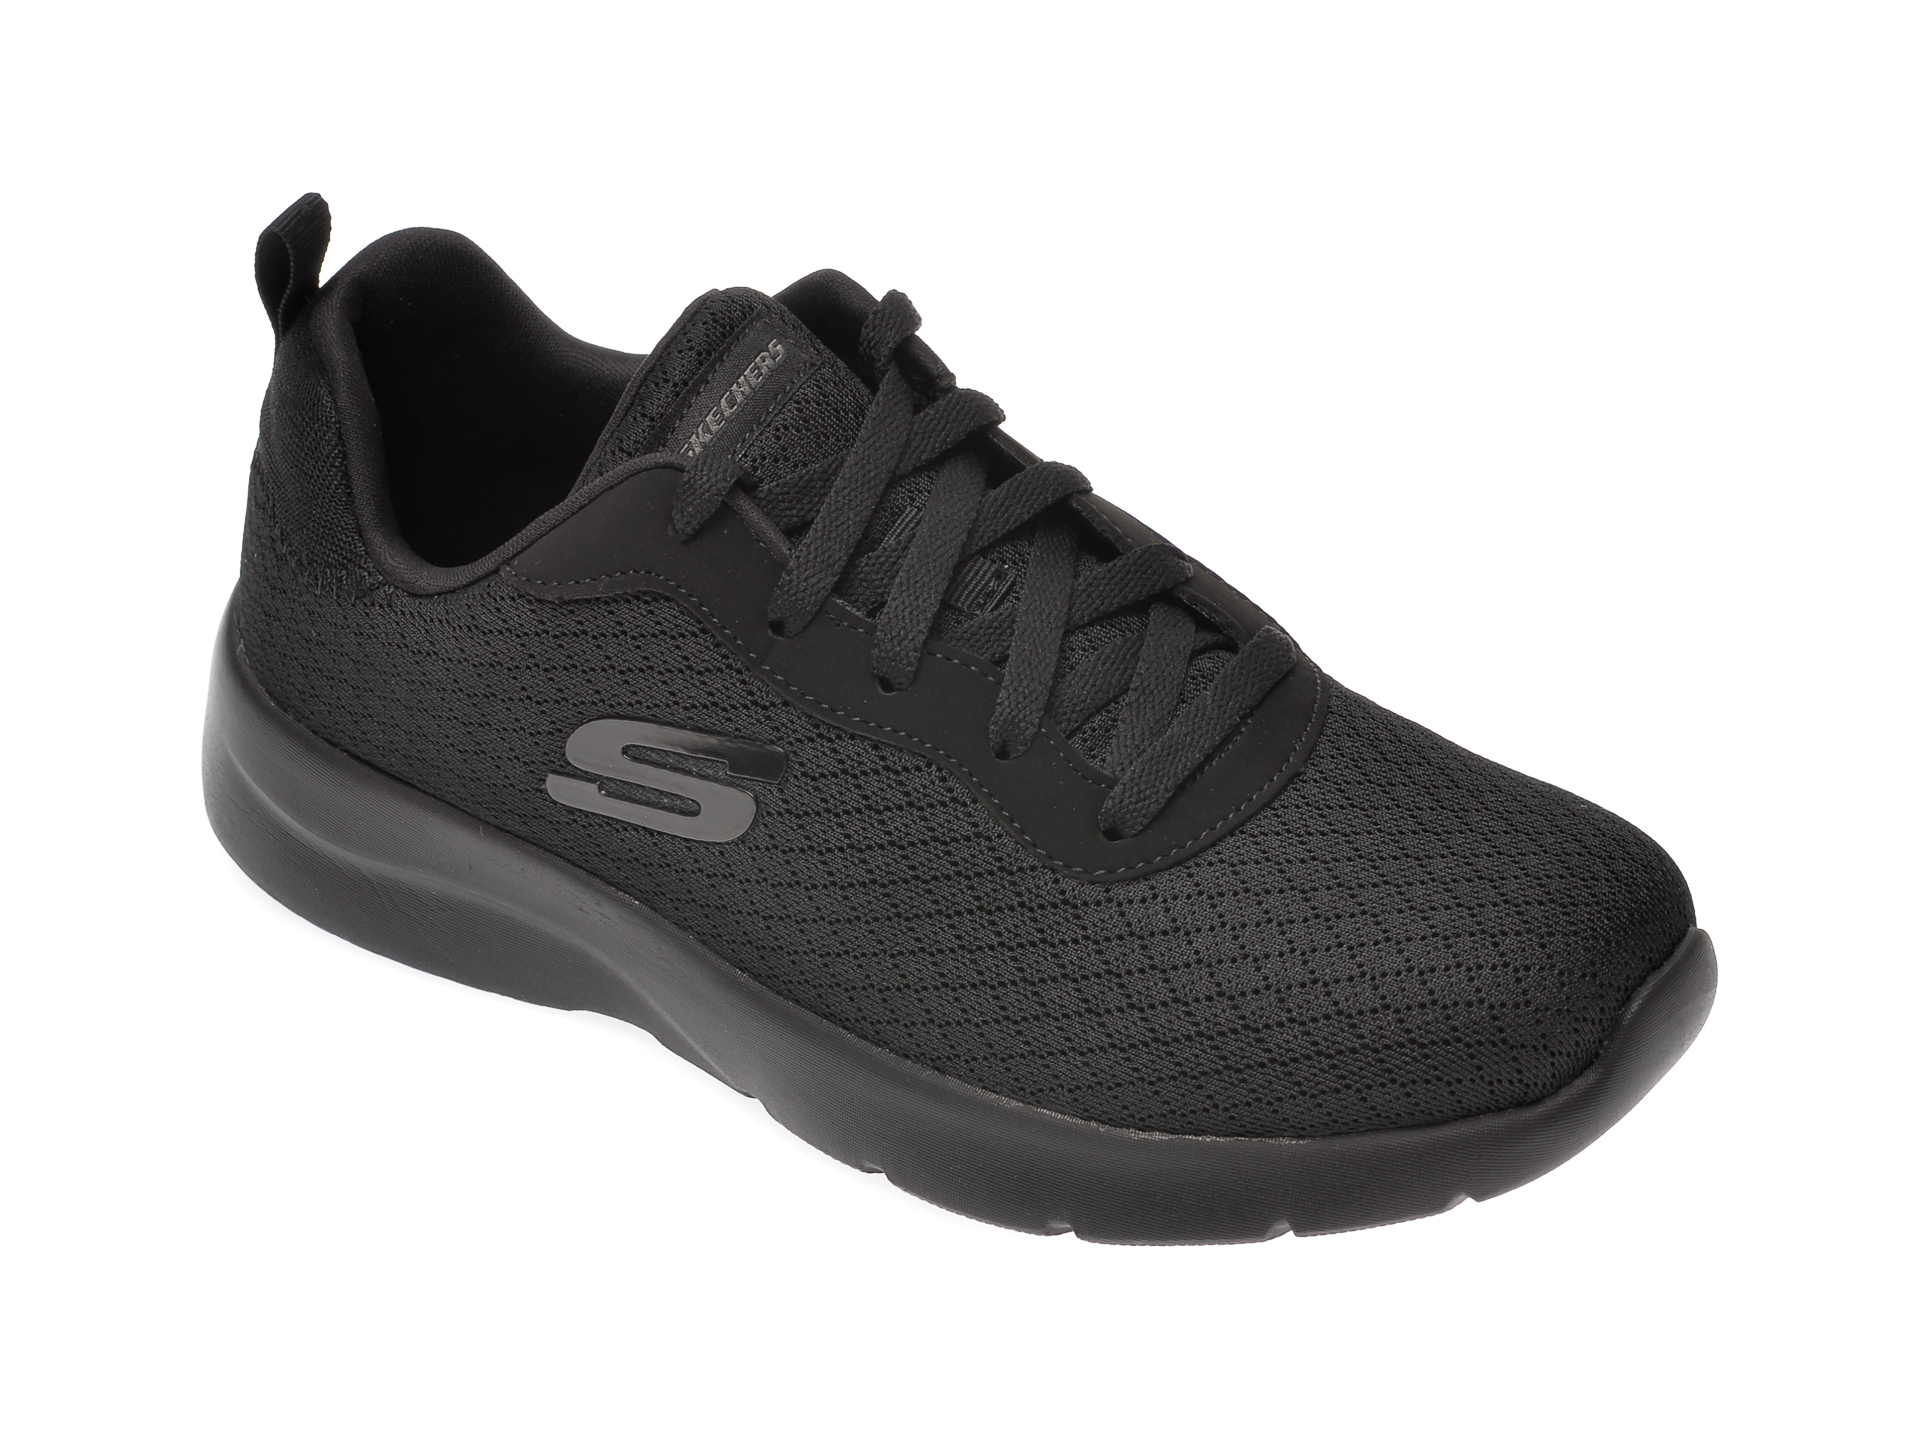 Pantofi sport SKECHERS negri, Dynamight 2.0 Eye To Eye, din material textil